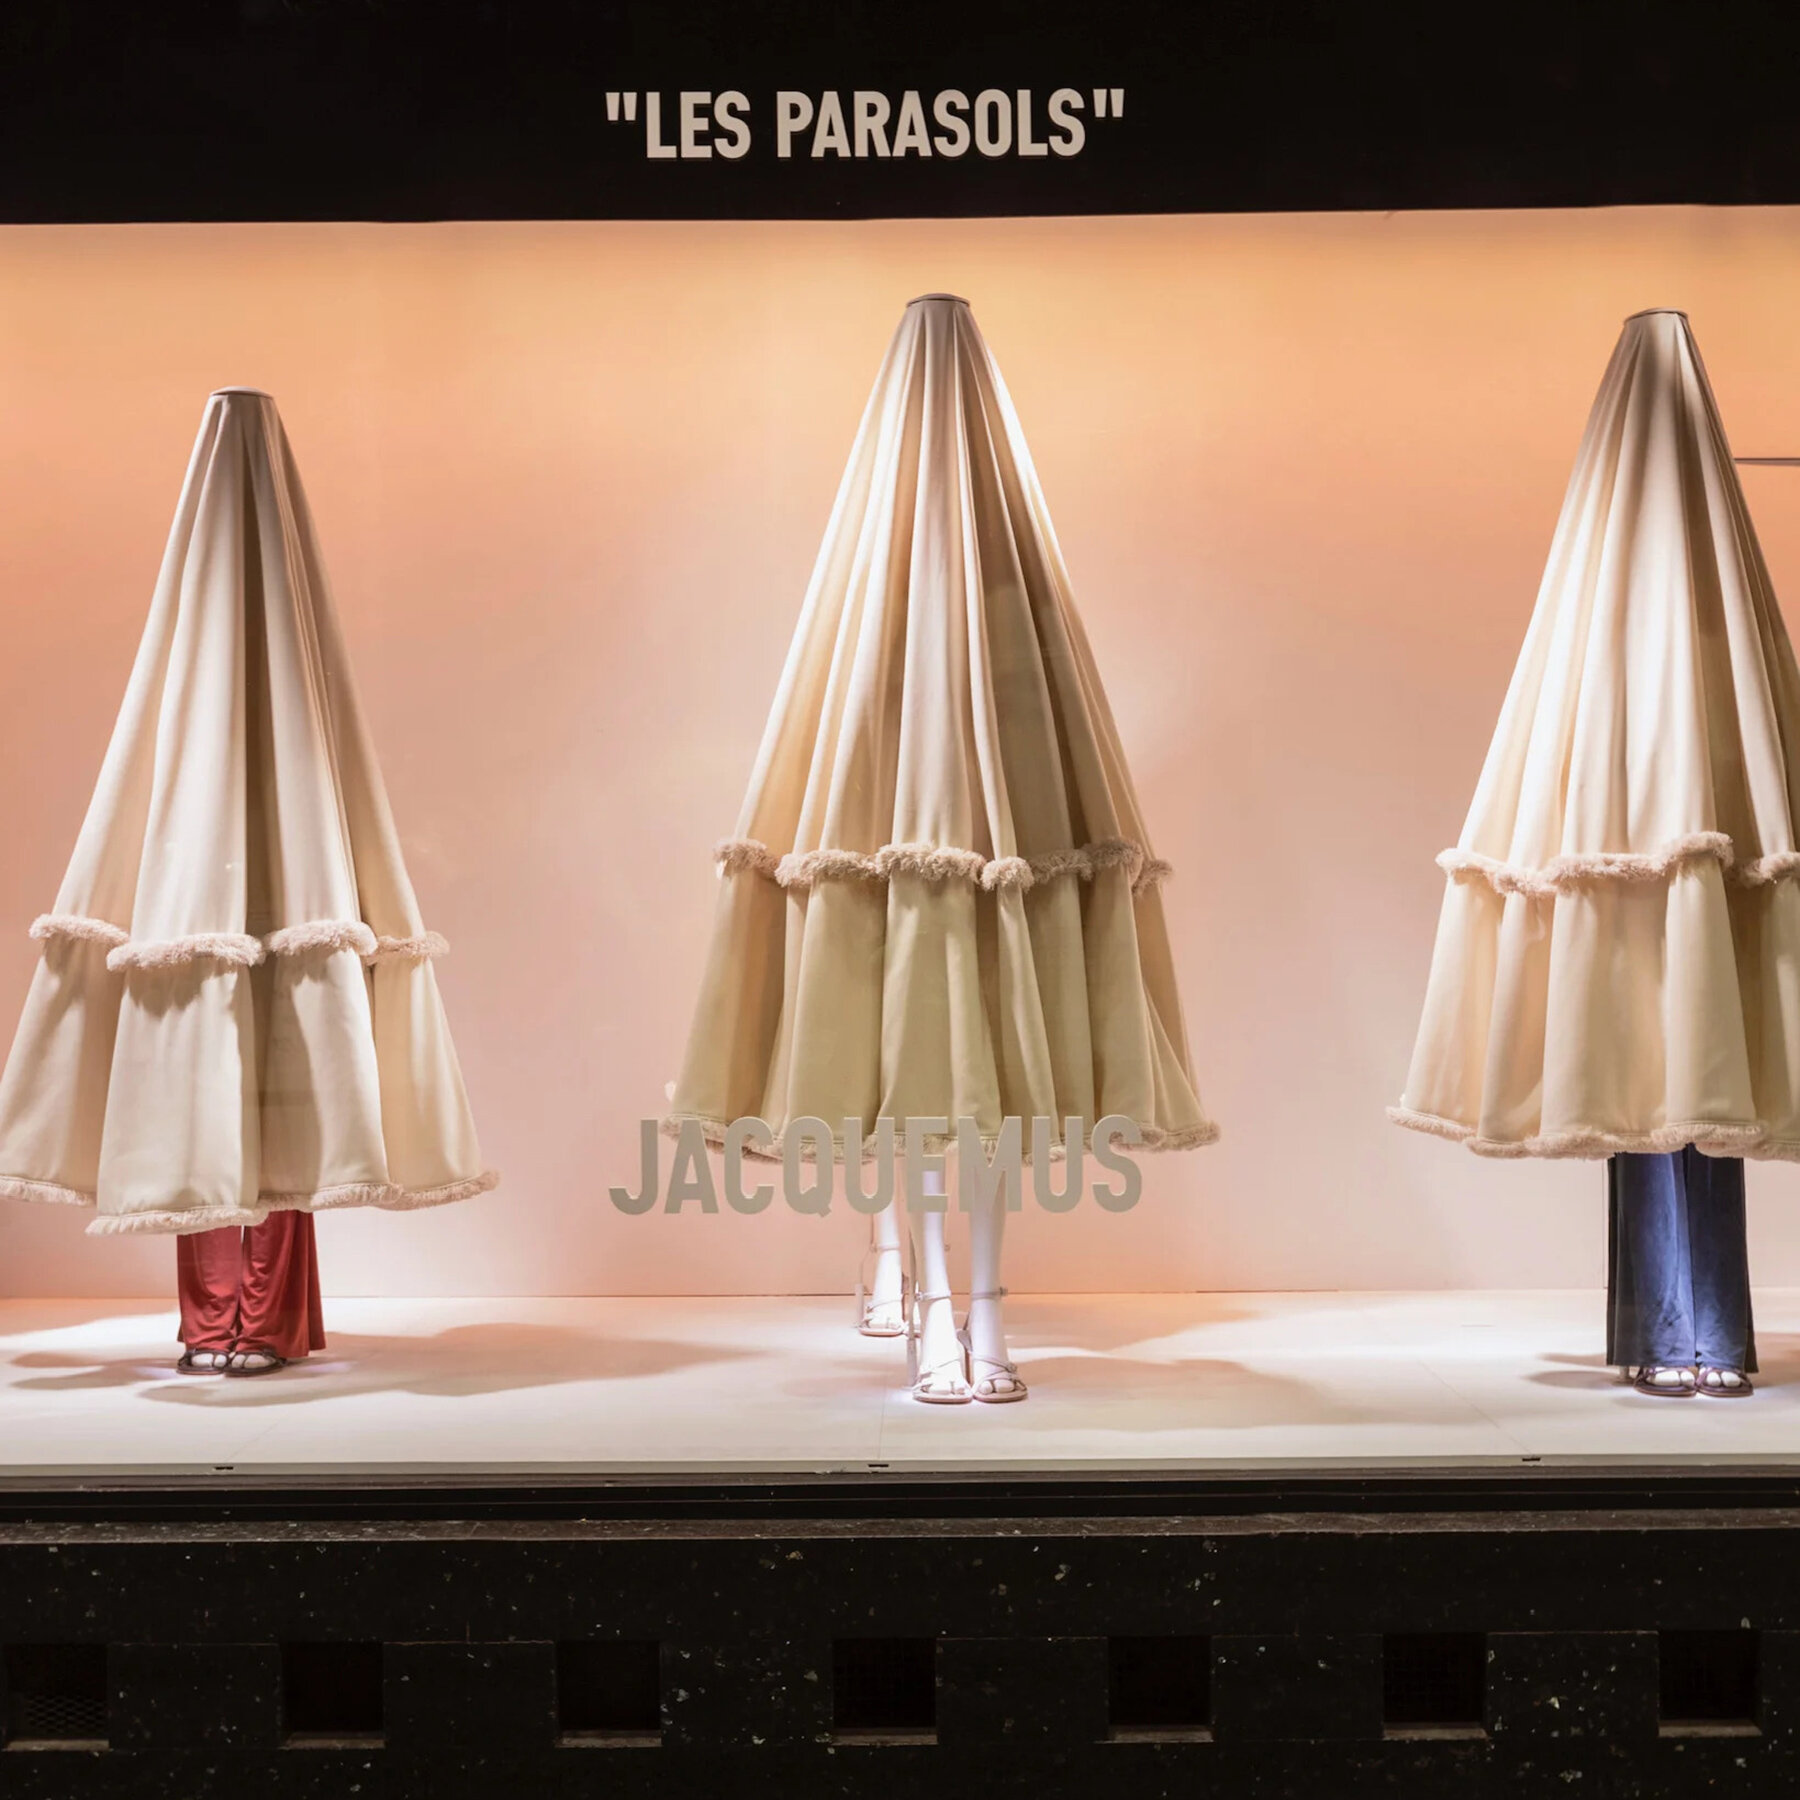 jacquemus-galerie-lafayette-paris-takeover-designboom-08a